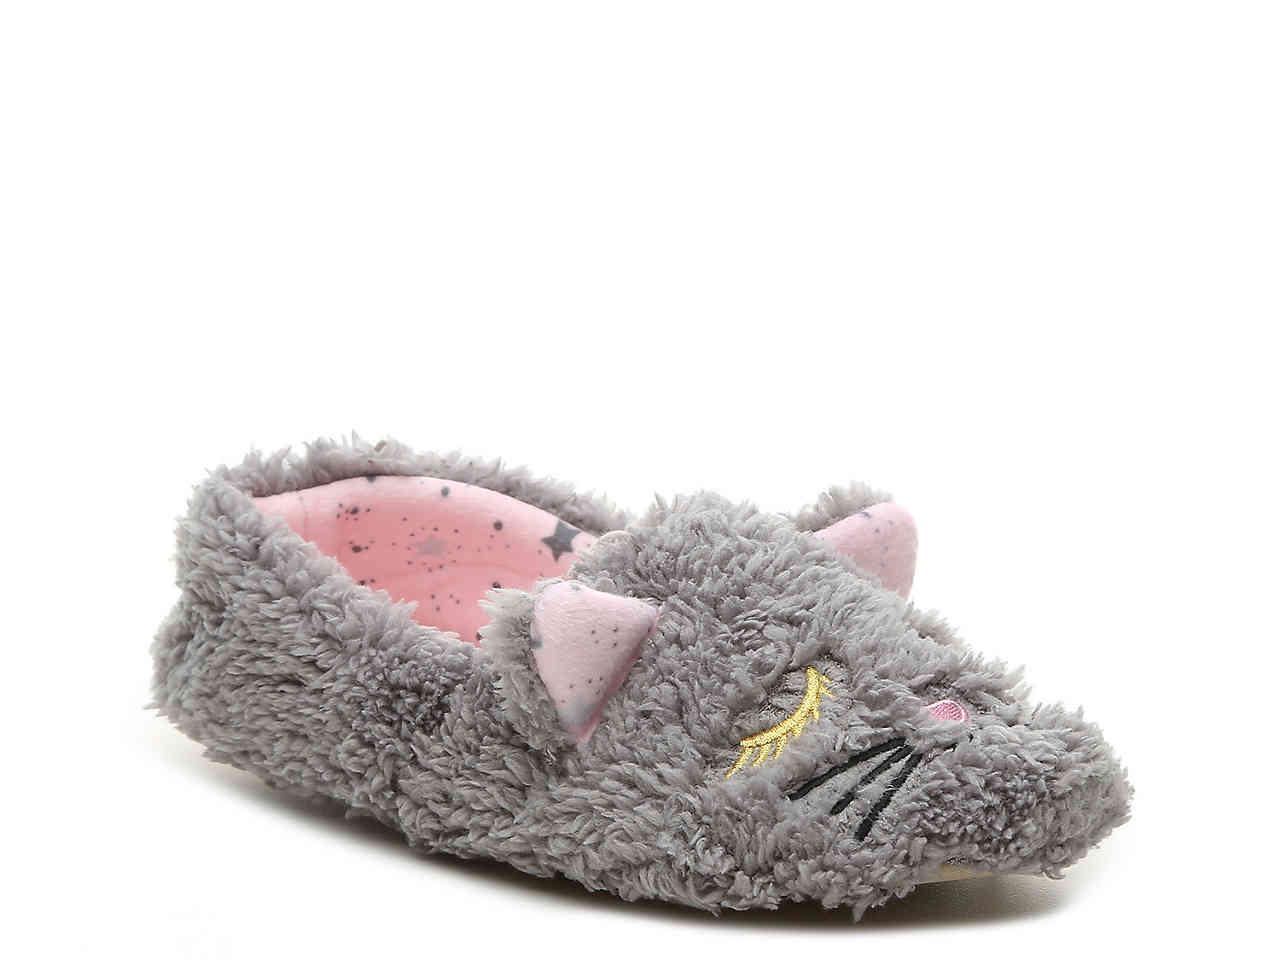 kensie slippers